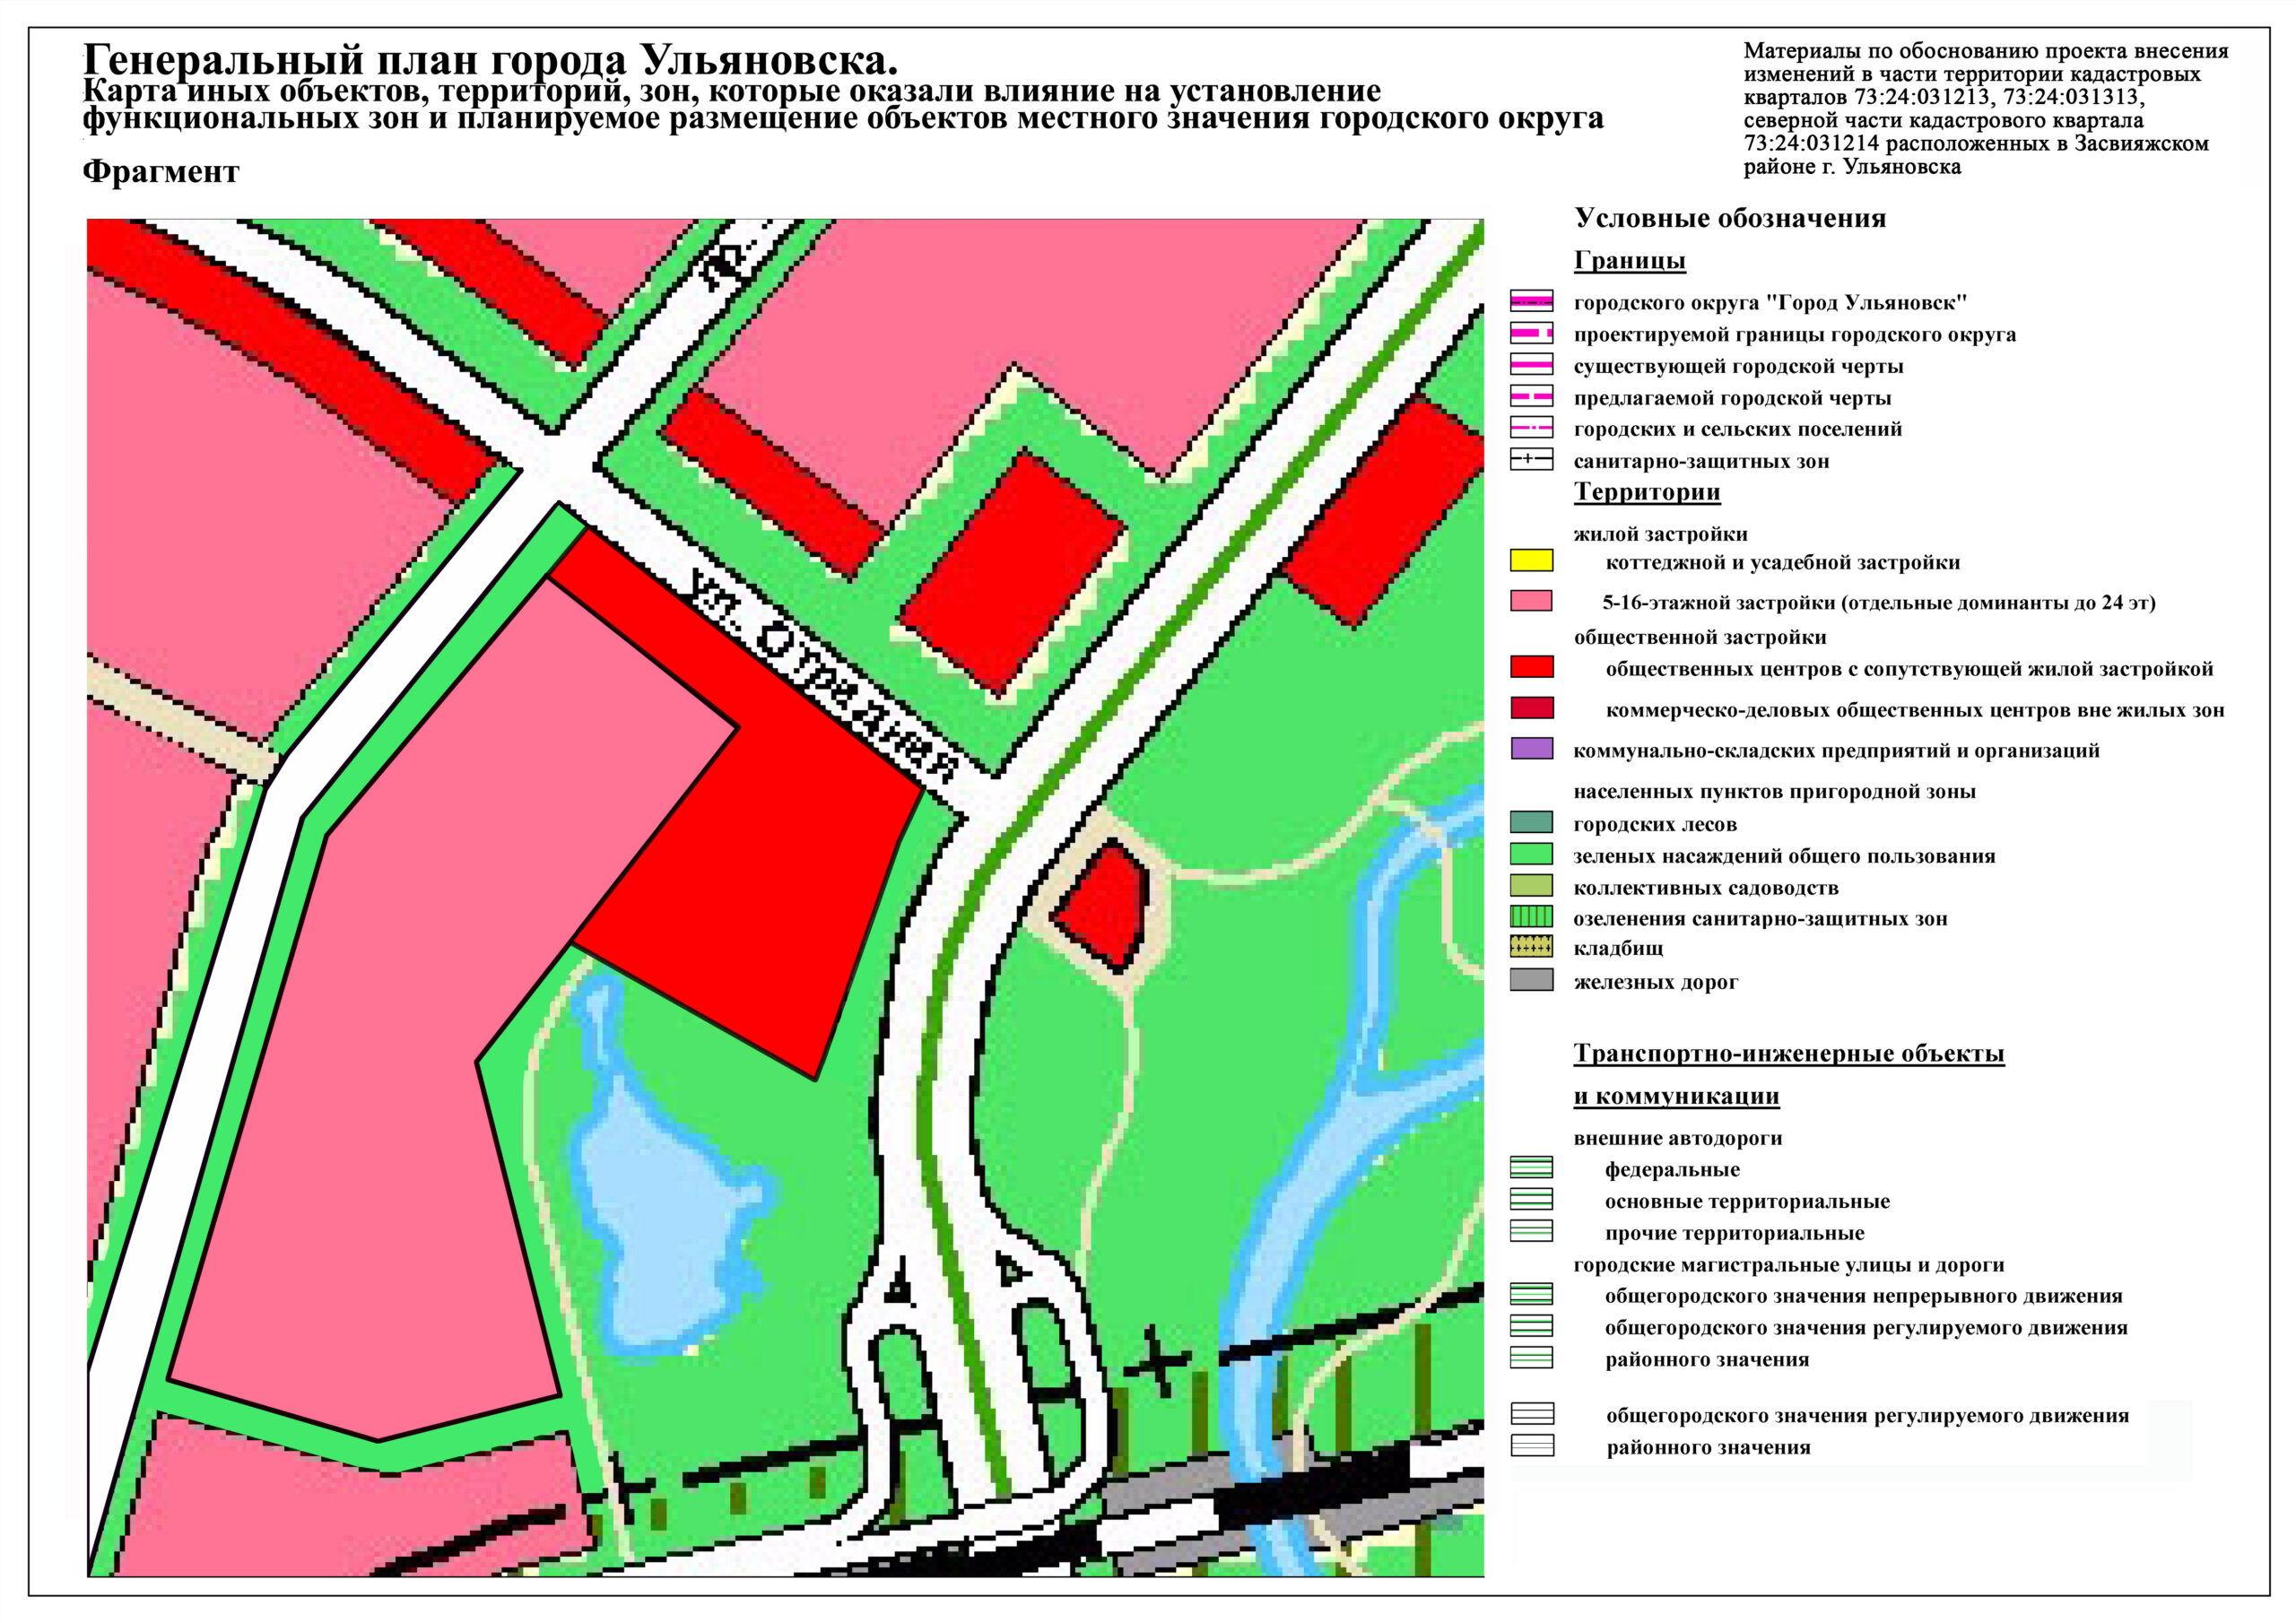 Мэрия отозвала проект решения по изменению Генплана относительно участка с прудом на ул. Шолмова Улпресса - все новости Ульяновска